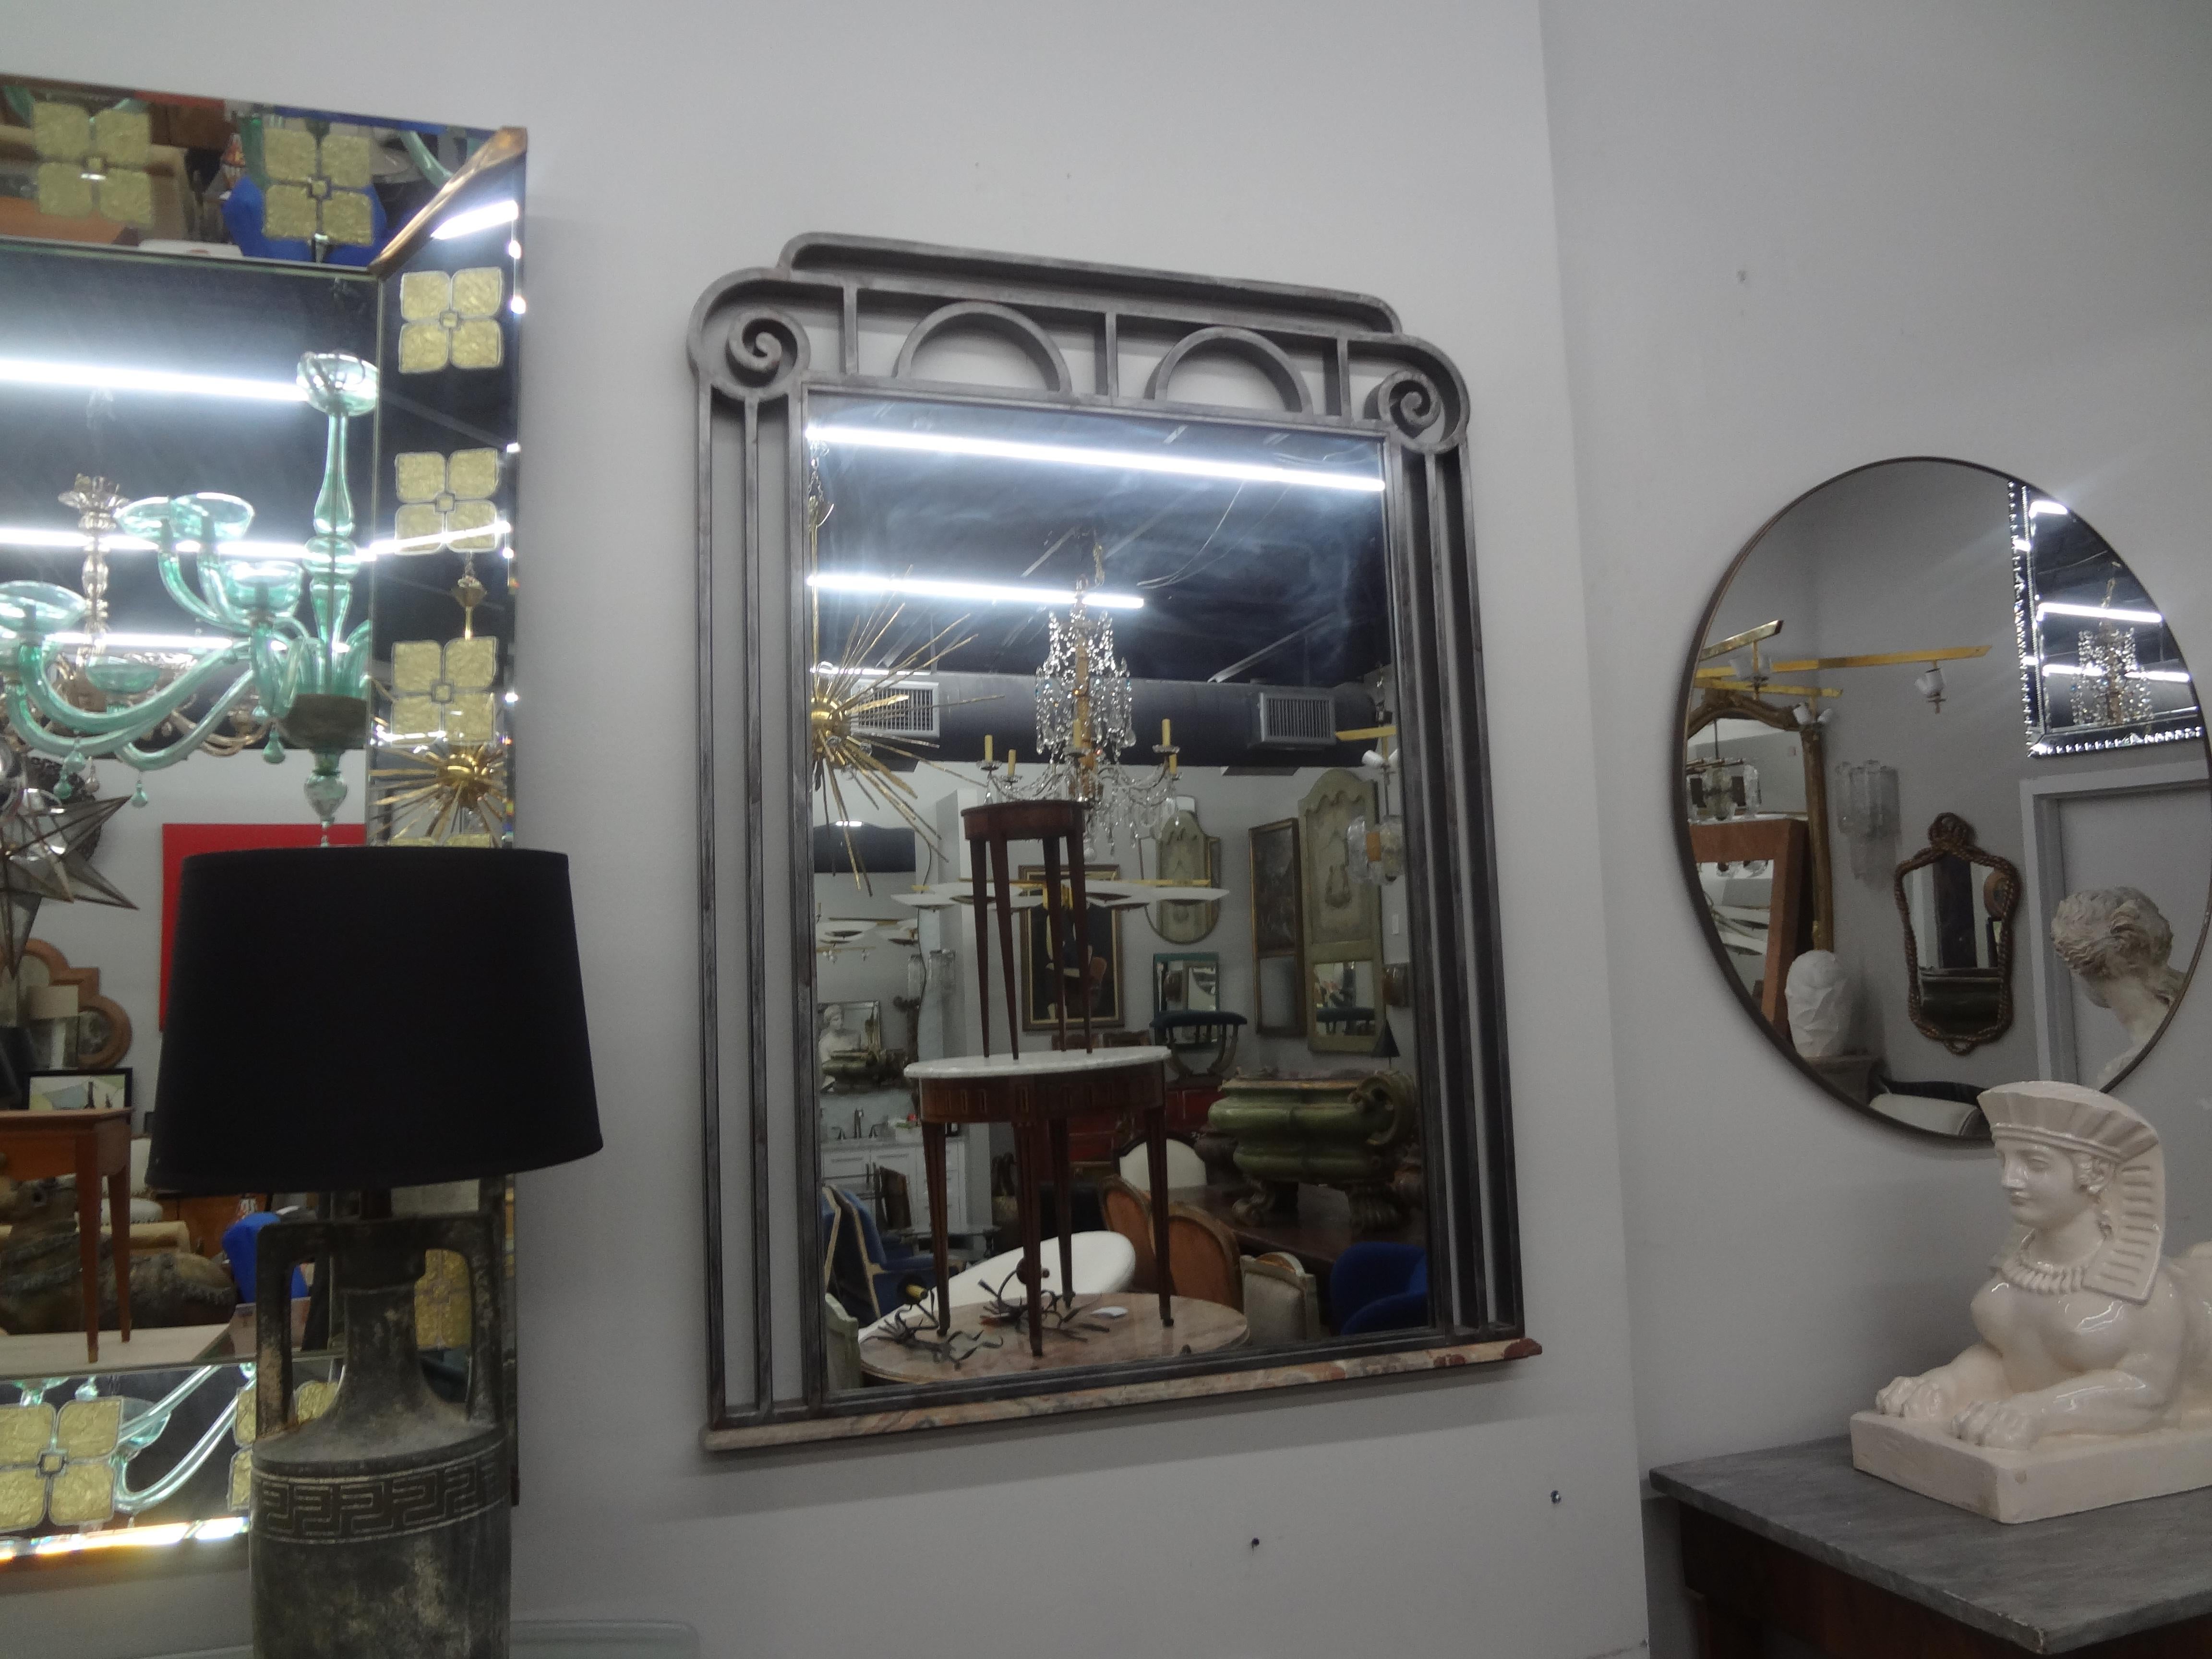 Miroir Art Déco français en acier avec base en marbre.
Ce beau miroir en acier de la fin de l'Art déco français, au design géométrique fort, possède une base en marbre inhabituelle et est de bonne facture.
Notre miroir français polyvalent s'adapte à